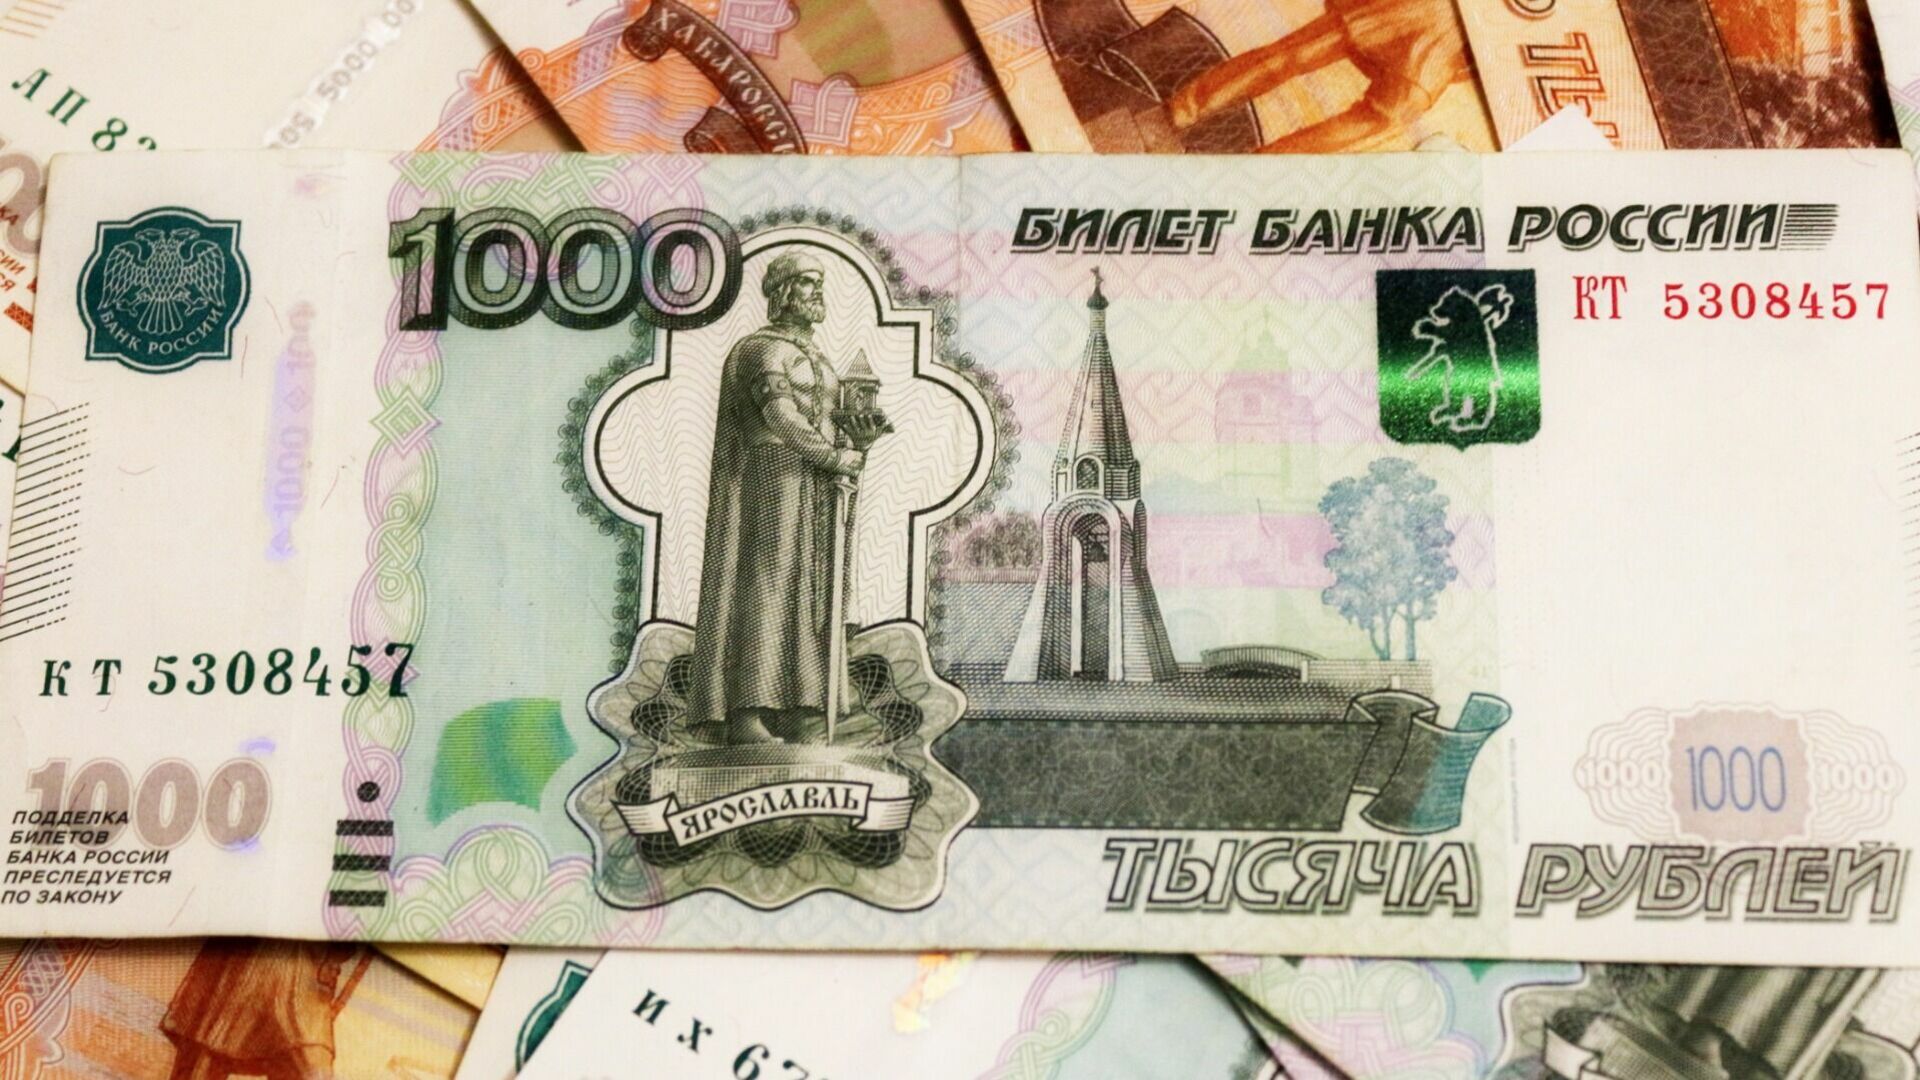 Тысячную купюру с изображением Нижнего Новгорода презентуют летом 2023 года